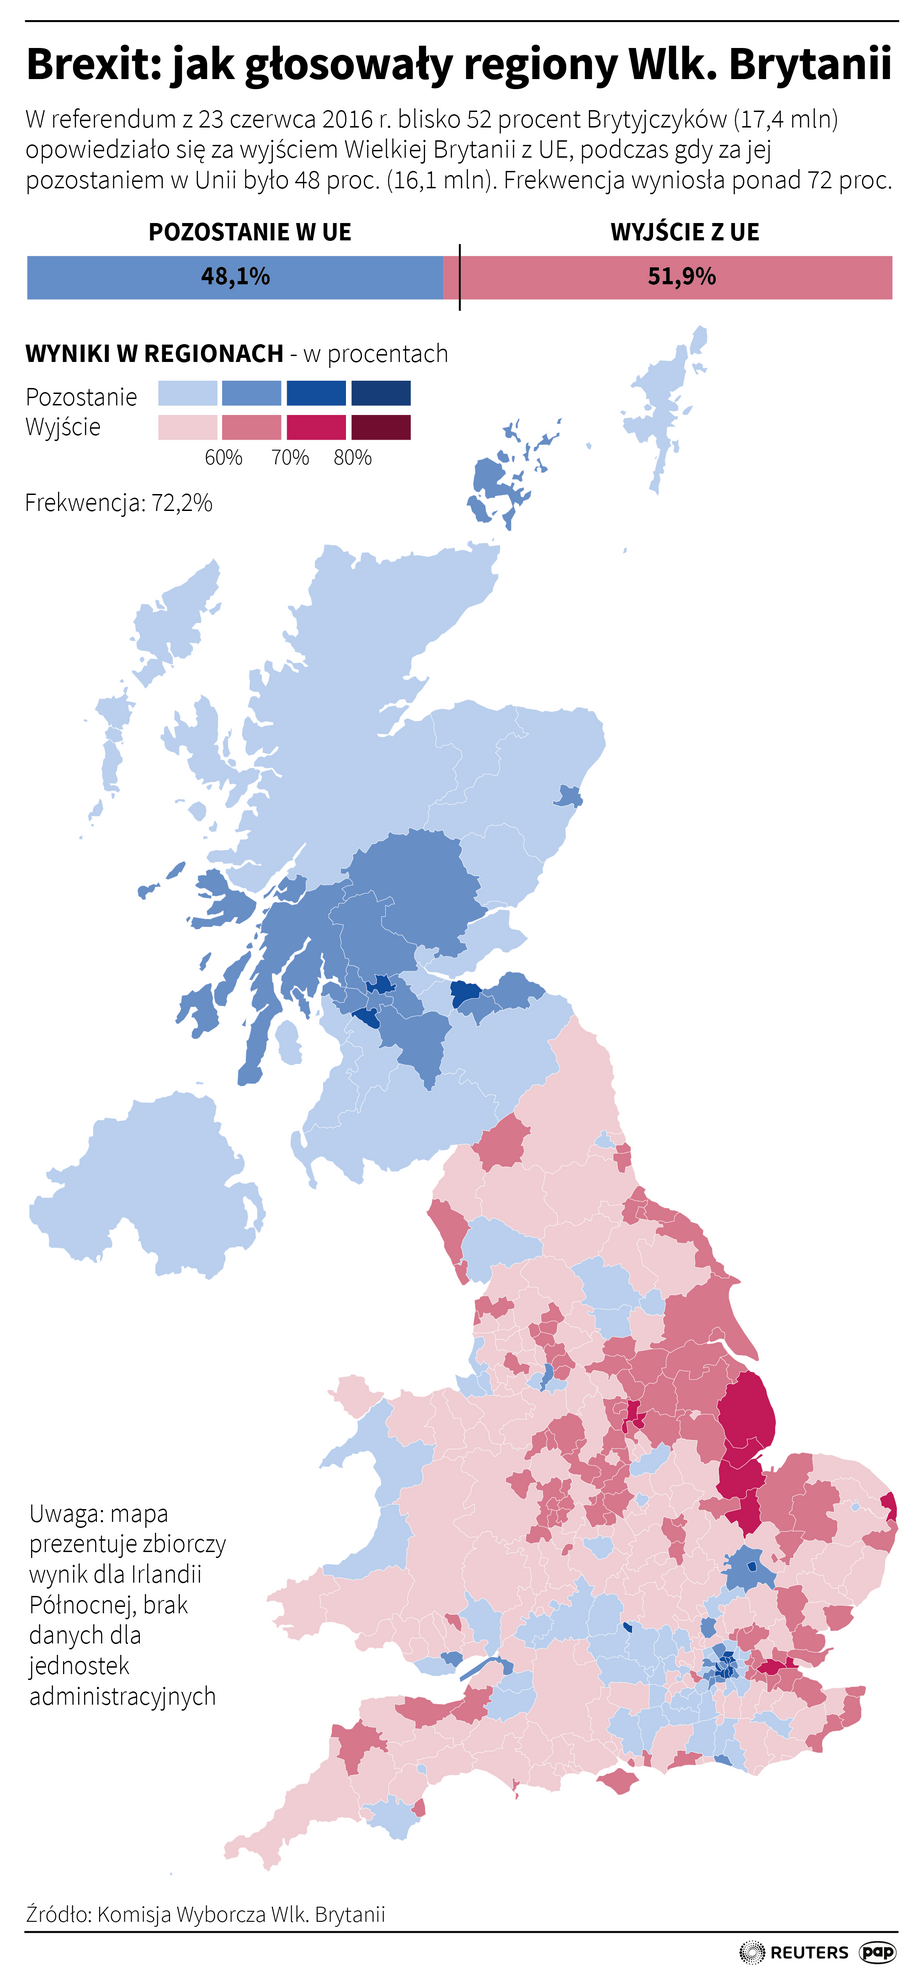 Brexit - jak głosowały regiony Wielkiej Brytanii?